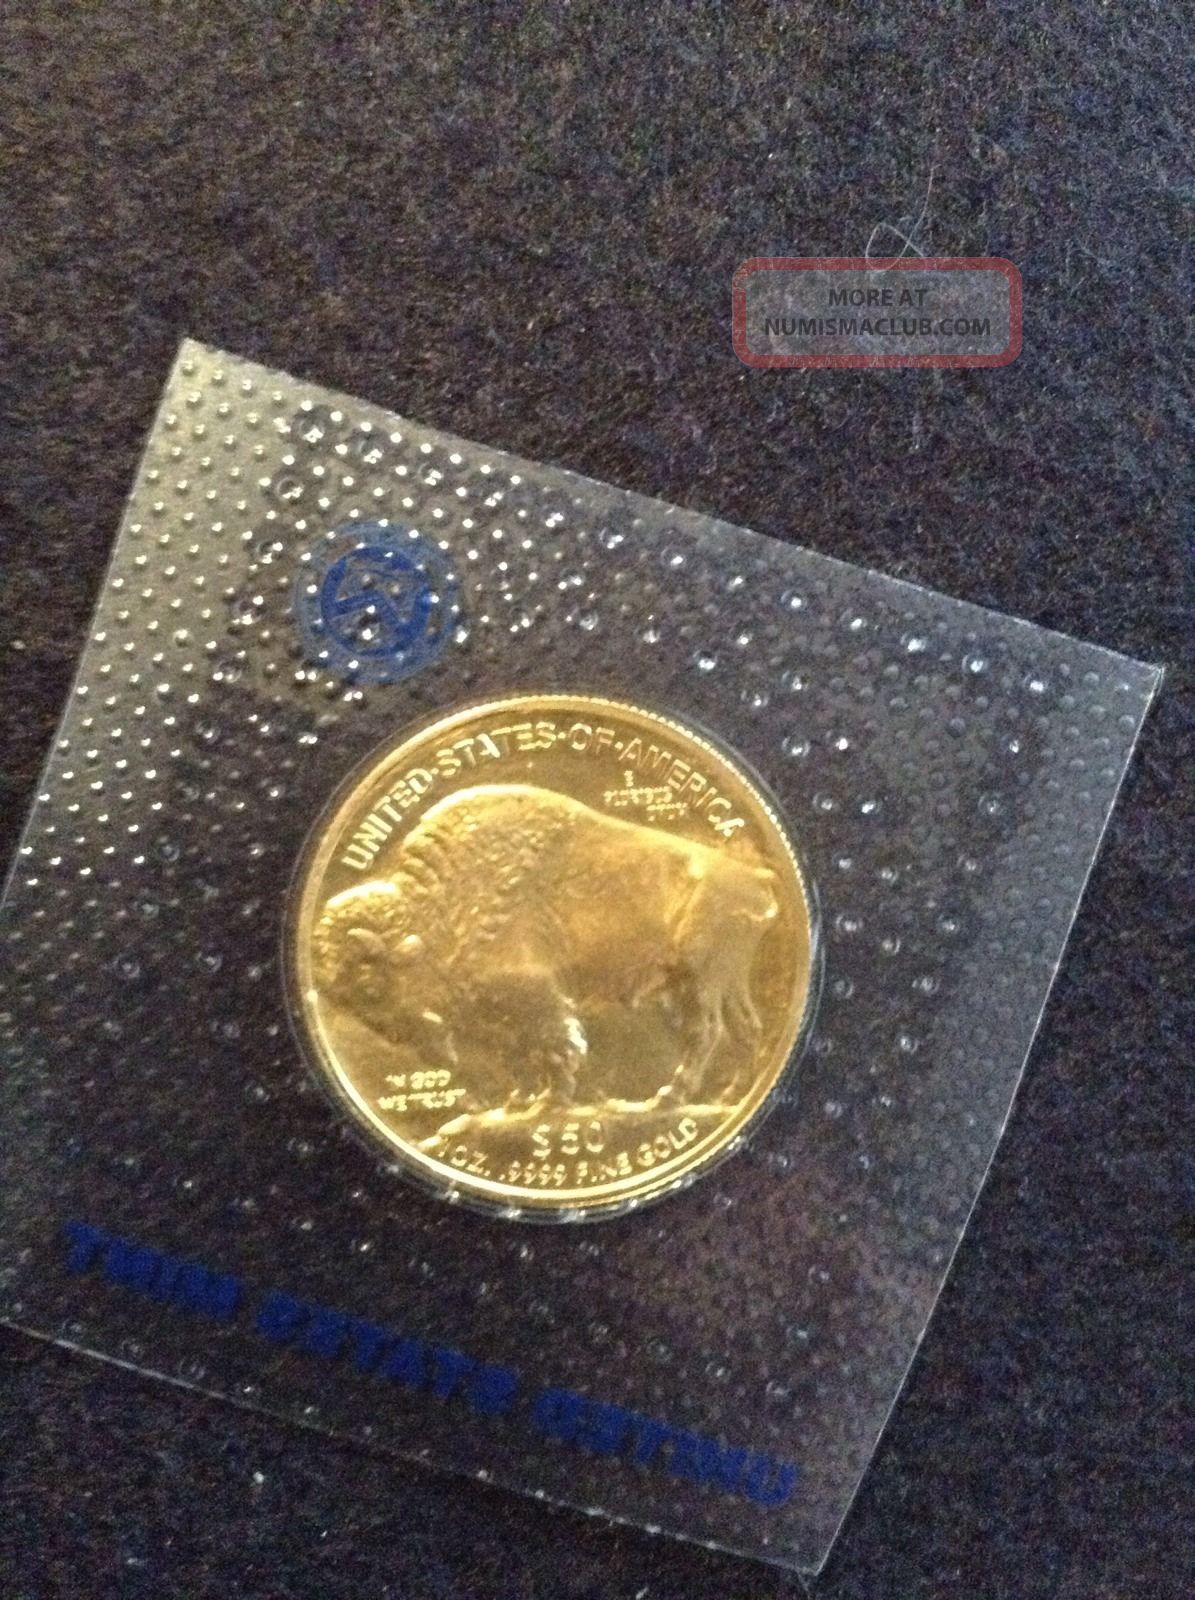 2014. 9999 Gold American Buffalo 1 Oz. Coin